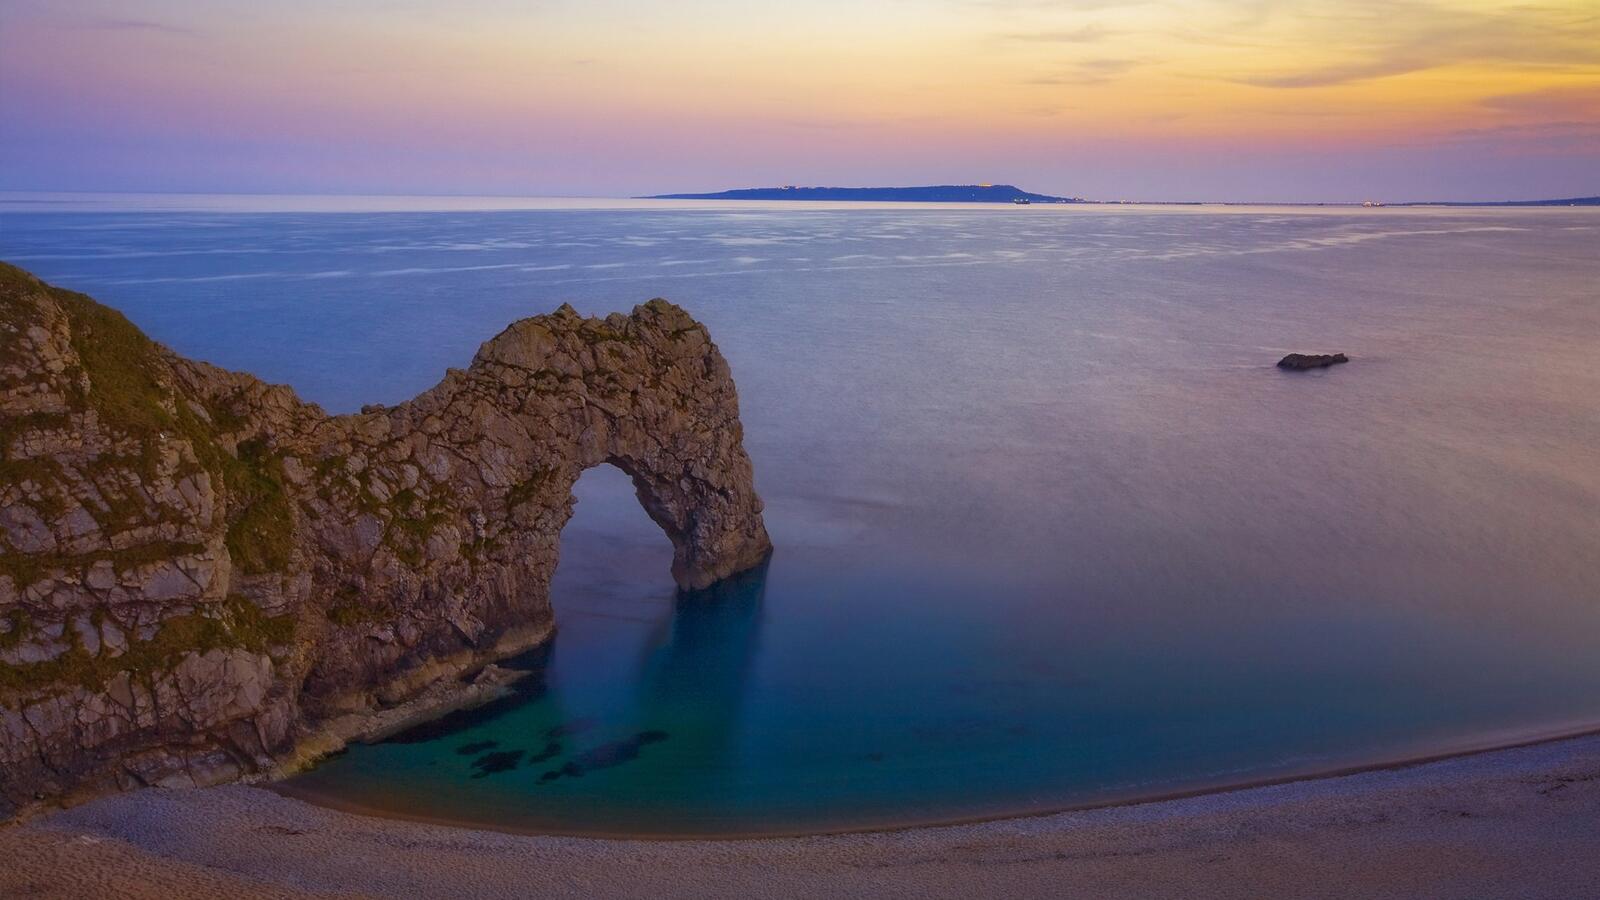 Бесплатное фото Скала на берегу пляжа с выступом в виде арки